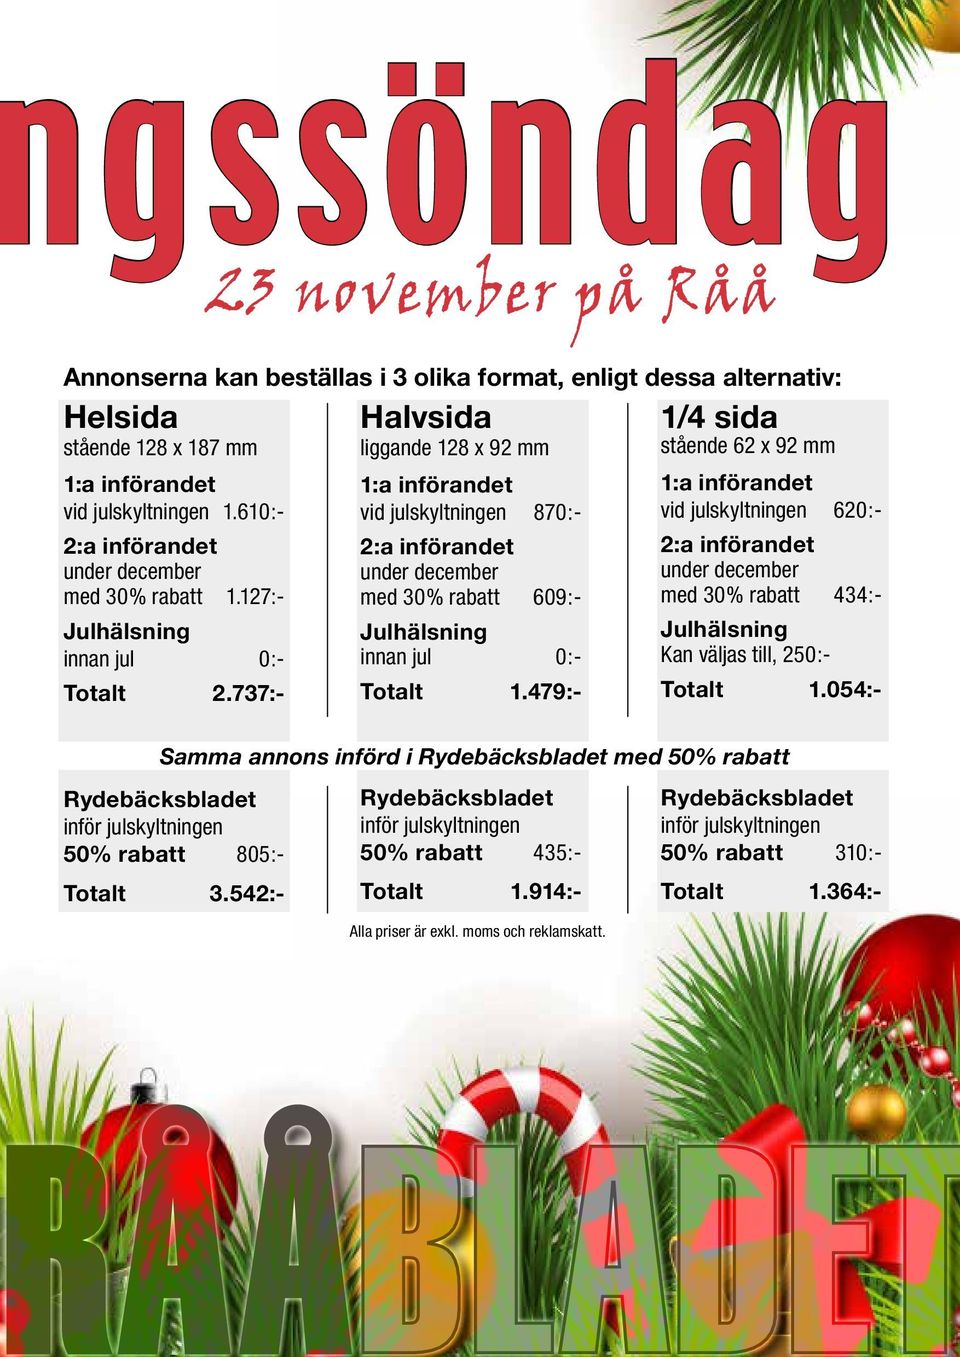 737:- Samma annons införd i Rydebäcksbladet med 50% rabatt Rydebäcksbladet inför julskyltningen 50% rabatt 805:- Totalt 3.